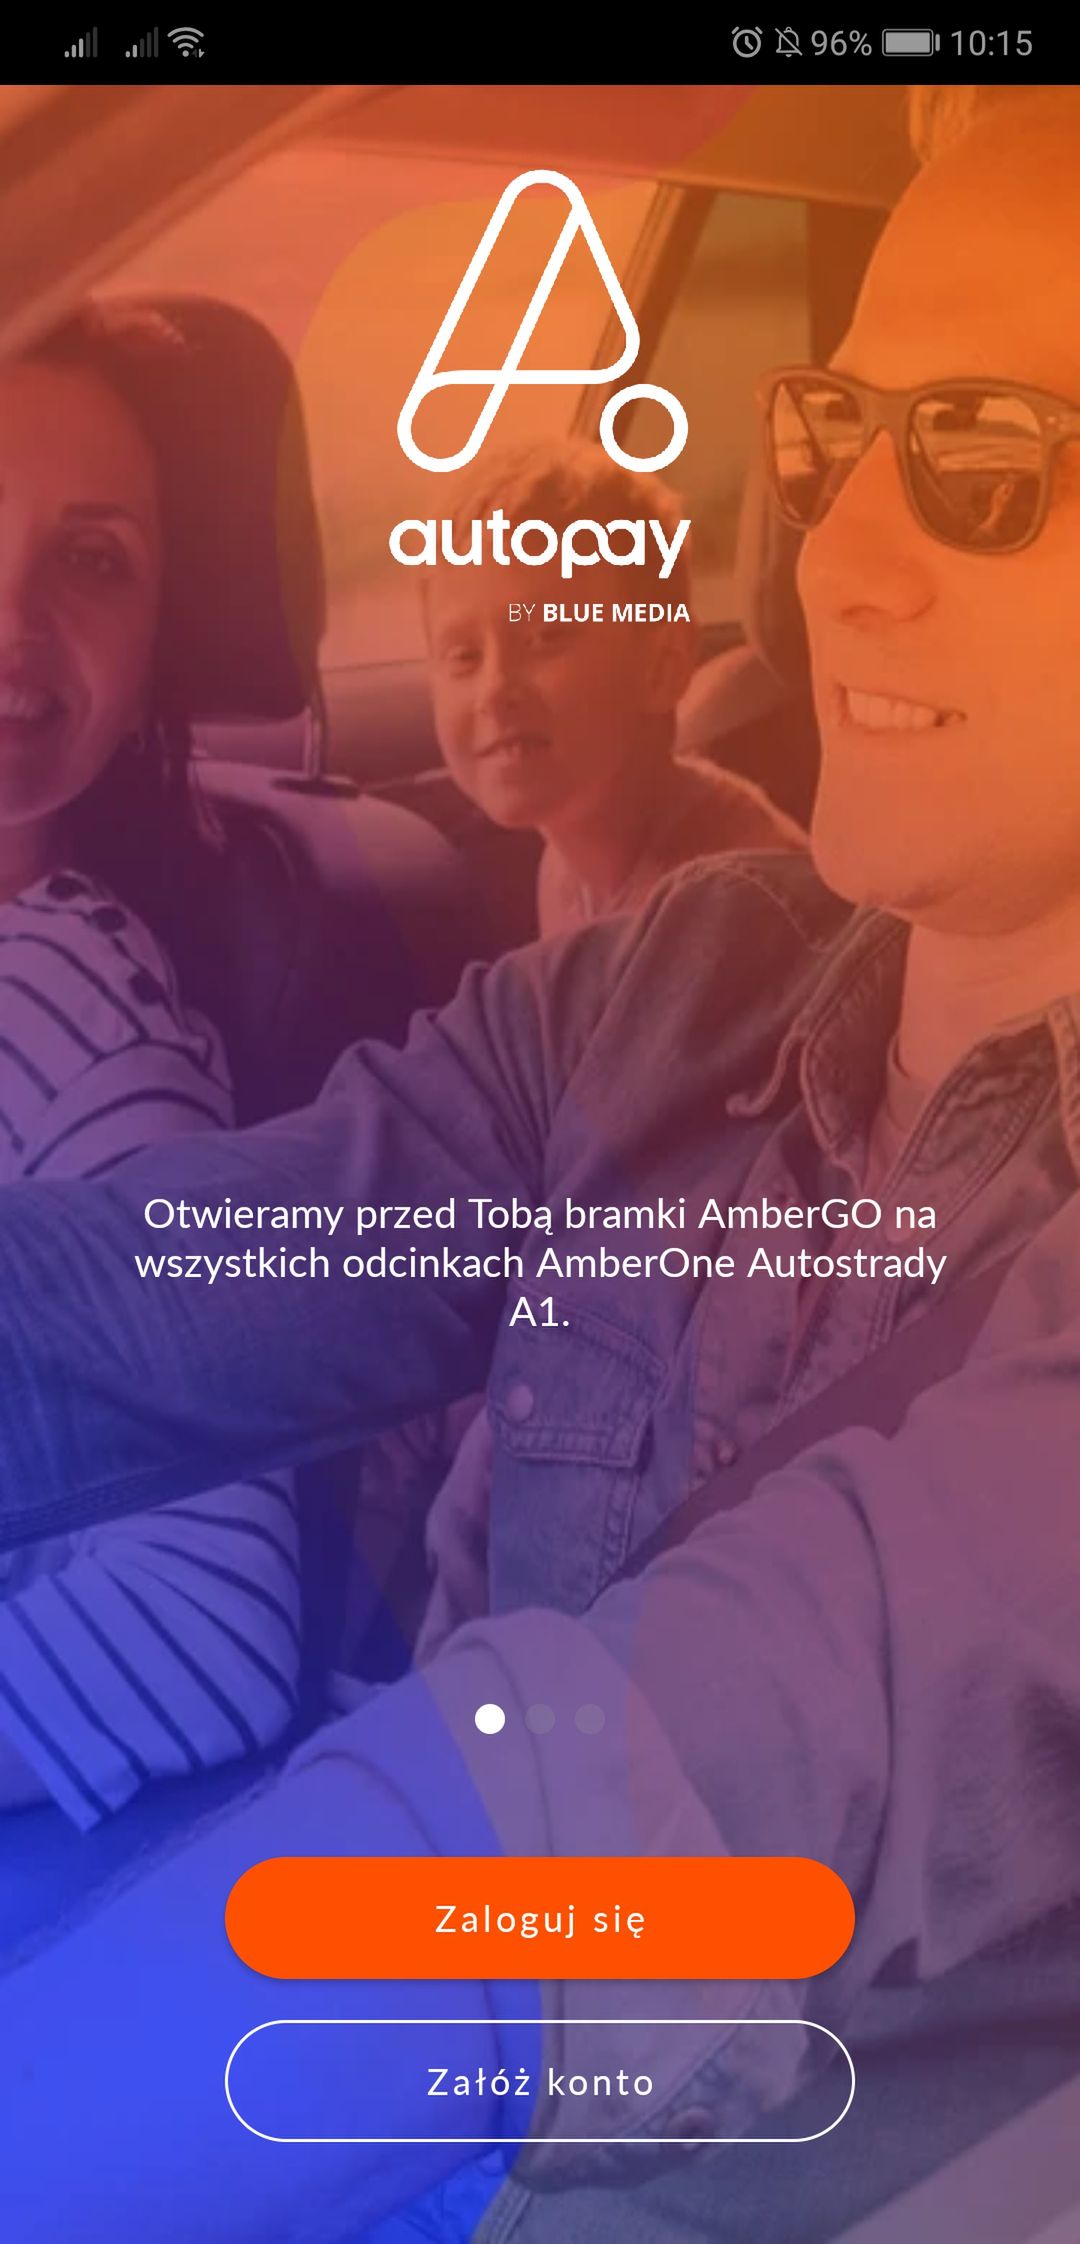 Autopay by Blue Media – aplikacja do automatyzacji płatności za przejazd autostradą A1.